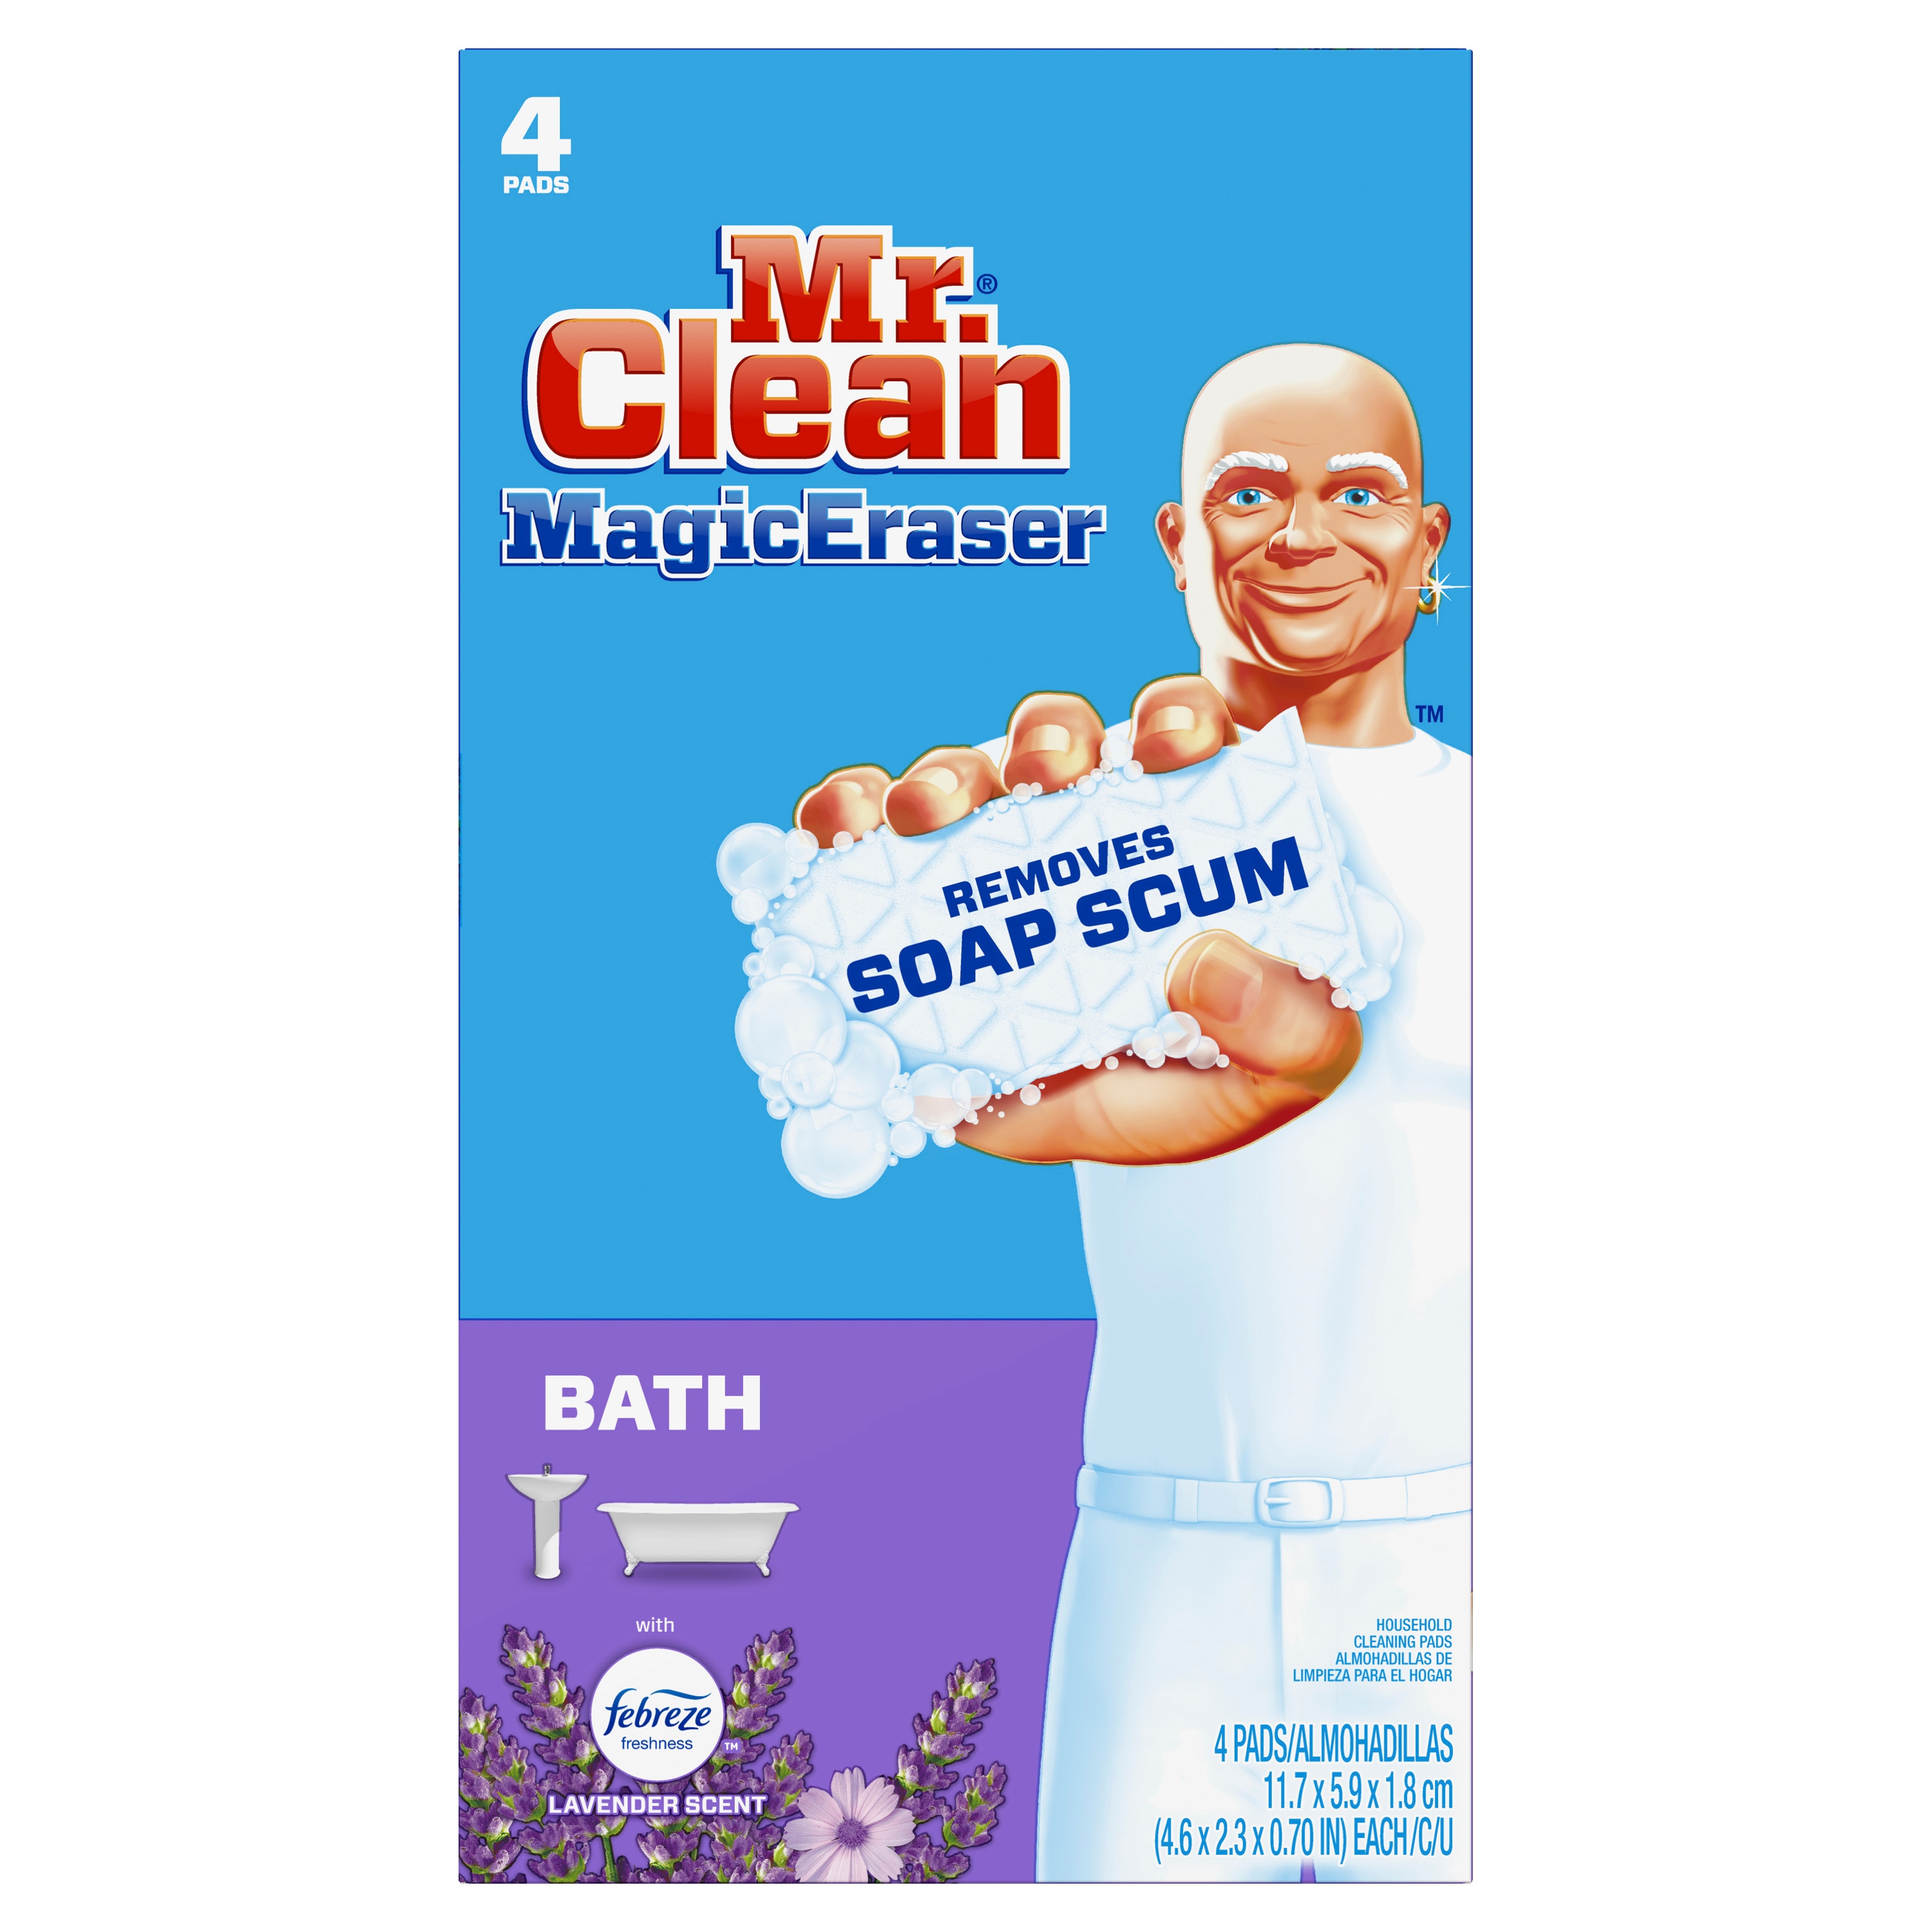 Nếu bạn muốn có một phòng tắm sạch sẽ, tinh tươm, Mr. Clean Magic Eraser Bath là sự lựa chọn hoàn hảo. Với khả năng làm sạch sâu và diệt khuẩn, sản phẩm này không chỉ mang lại cảm giác dễ chịu mà còn đảm bảo an toàn cho gia đình của bạn. Hãy xem ảnh liên quan để khám phá thêm nhé!